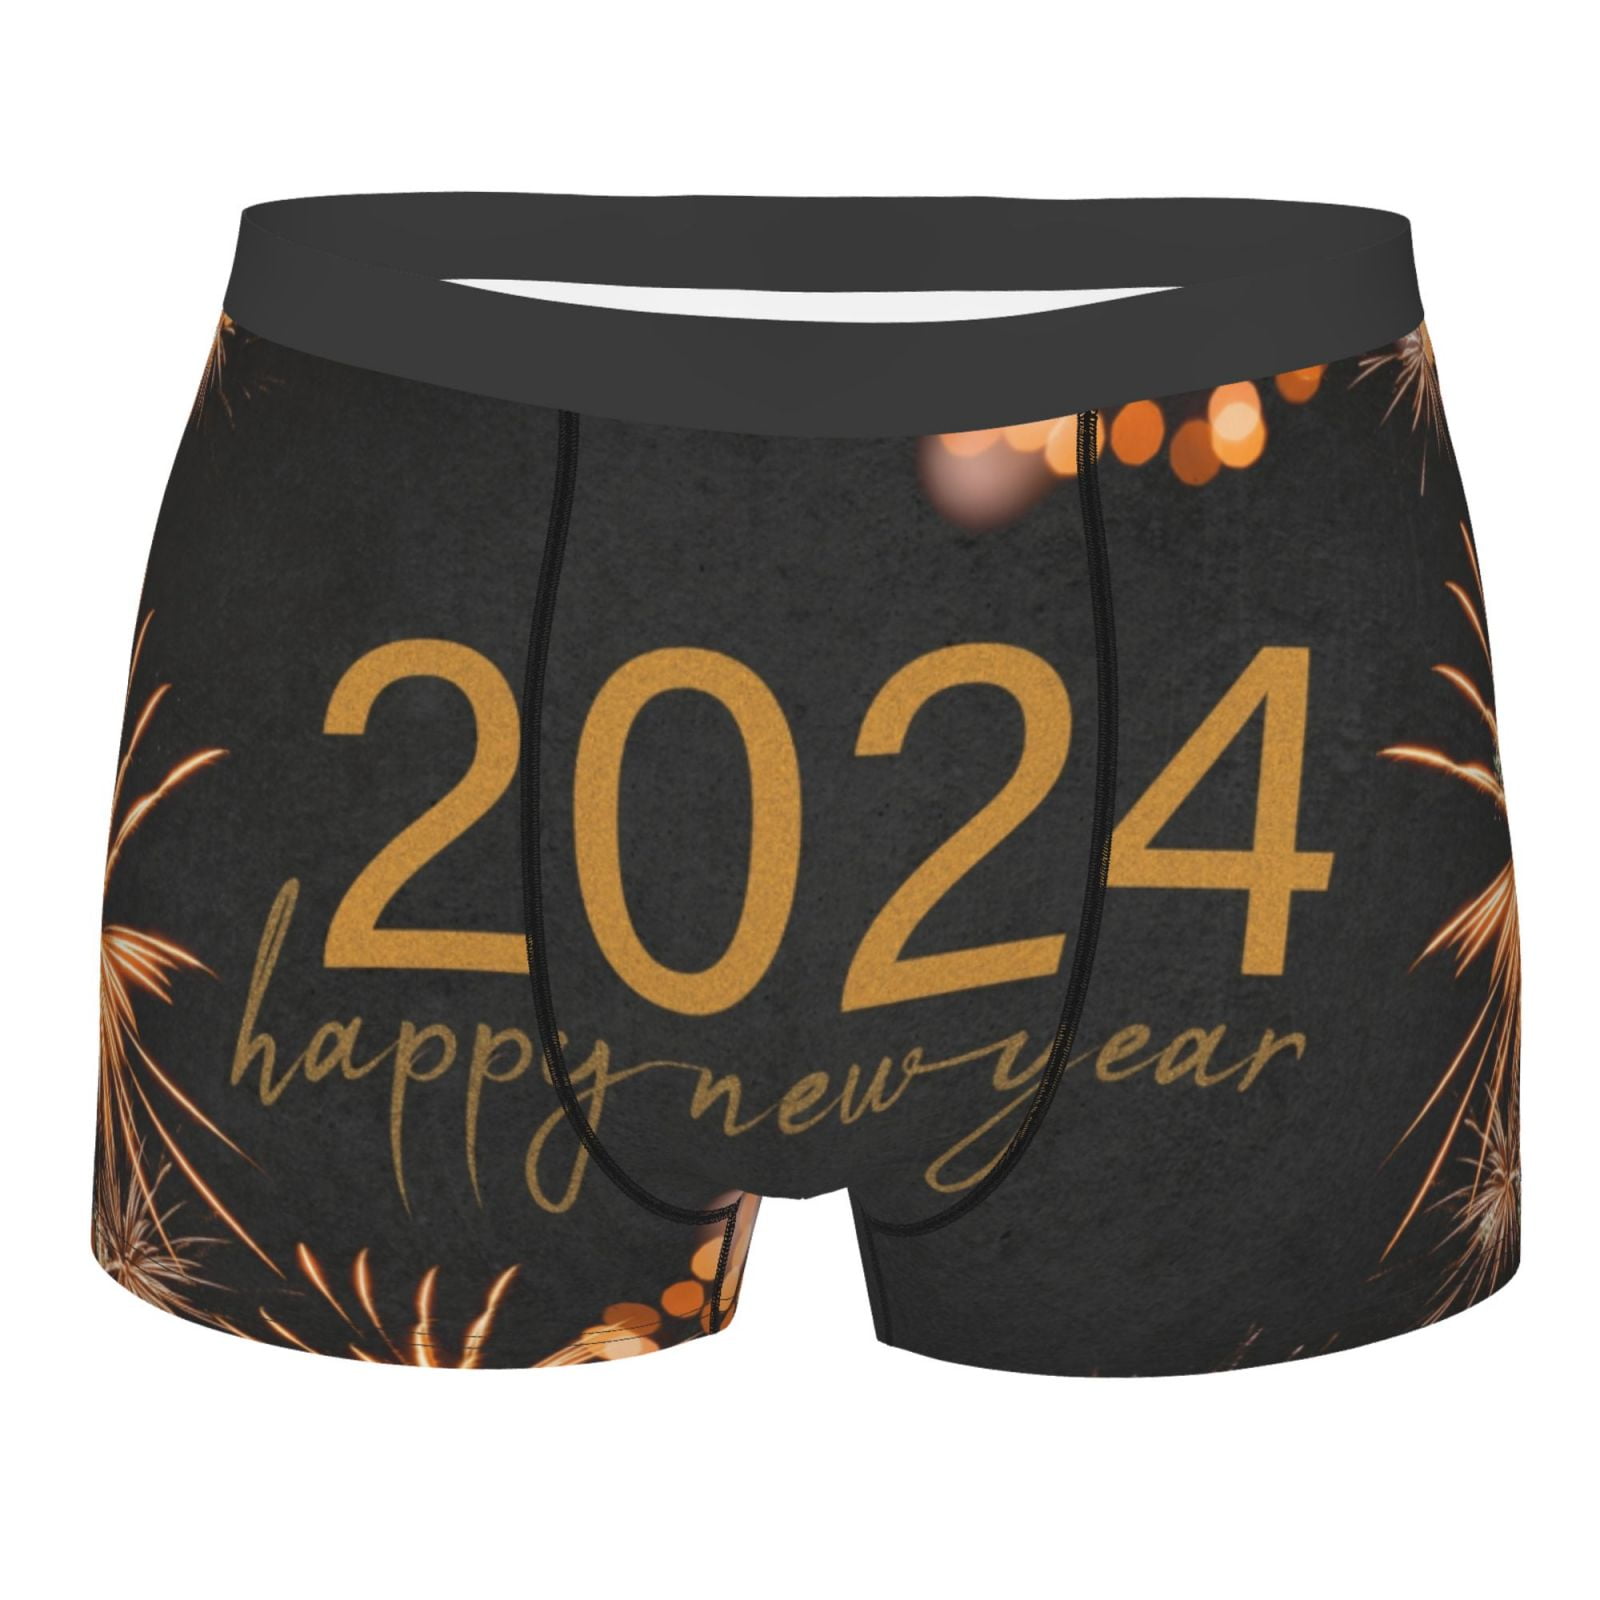 Kll Happy New Year 2024 Men'S Cotton Boxer Briefs Underwear-Medium 